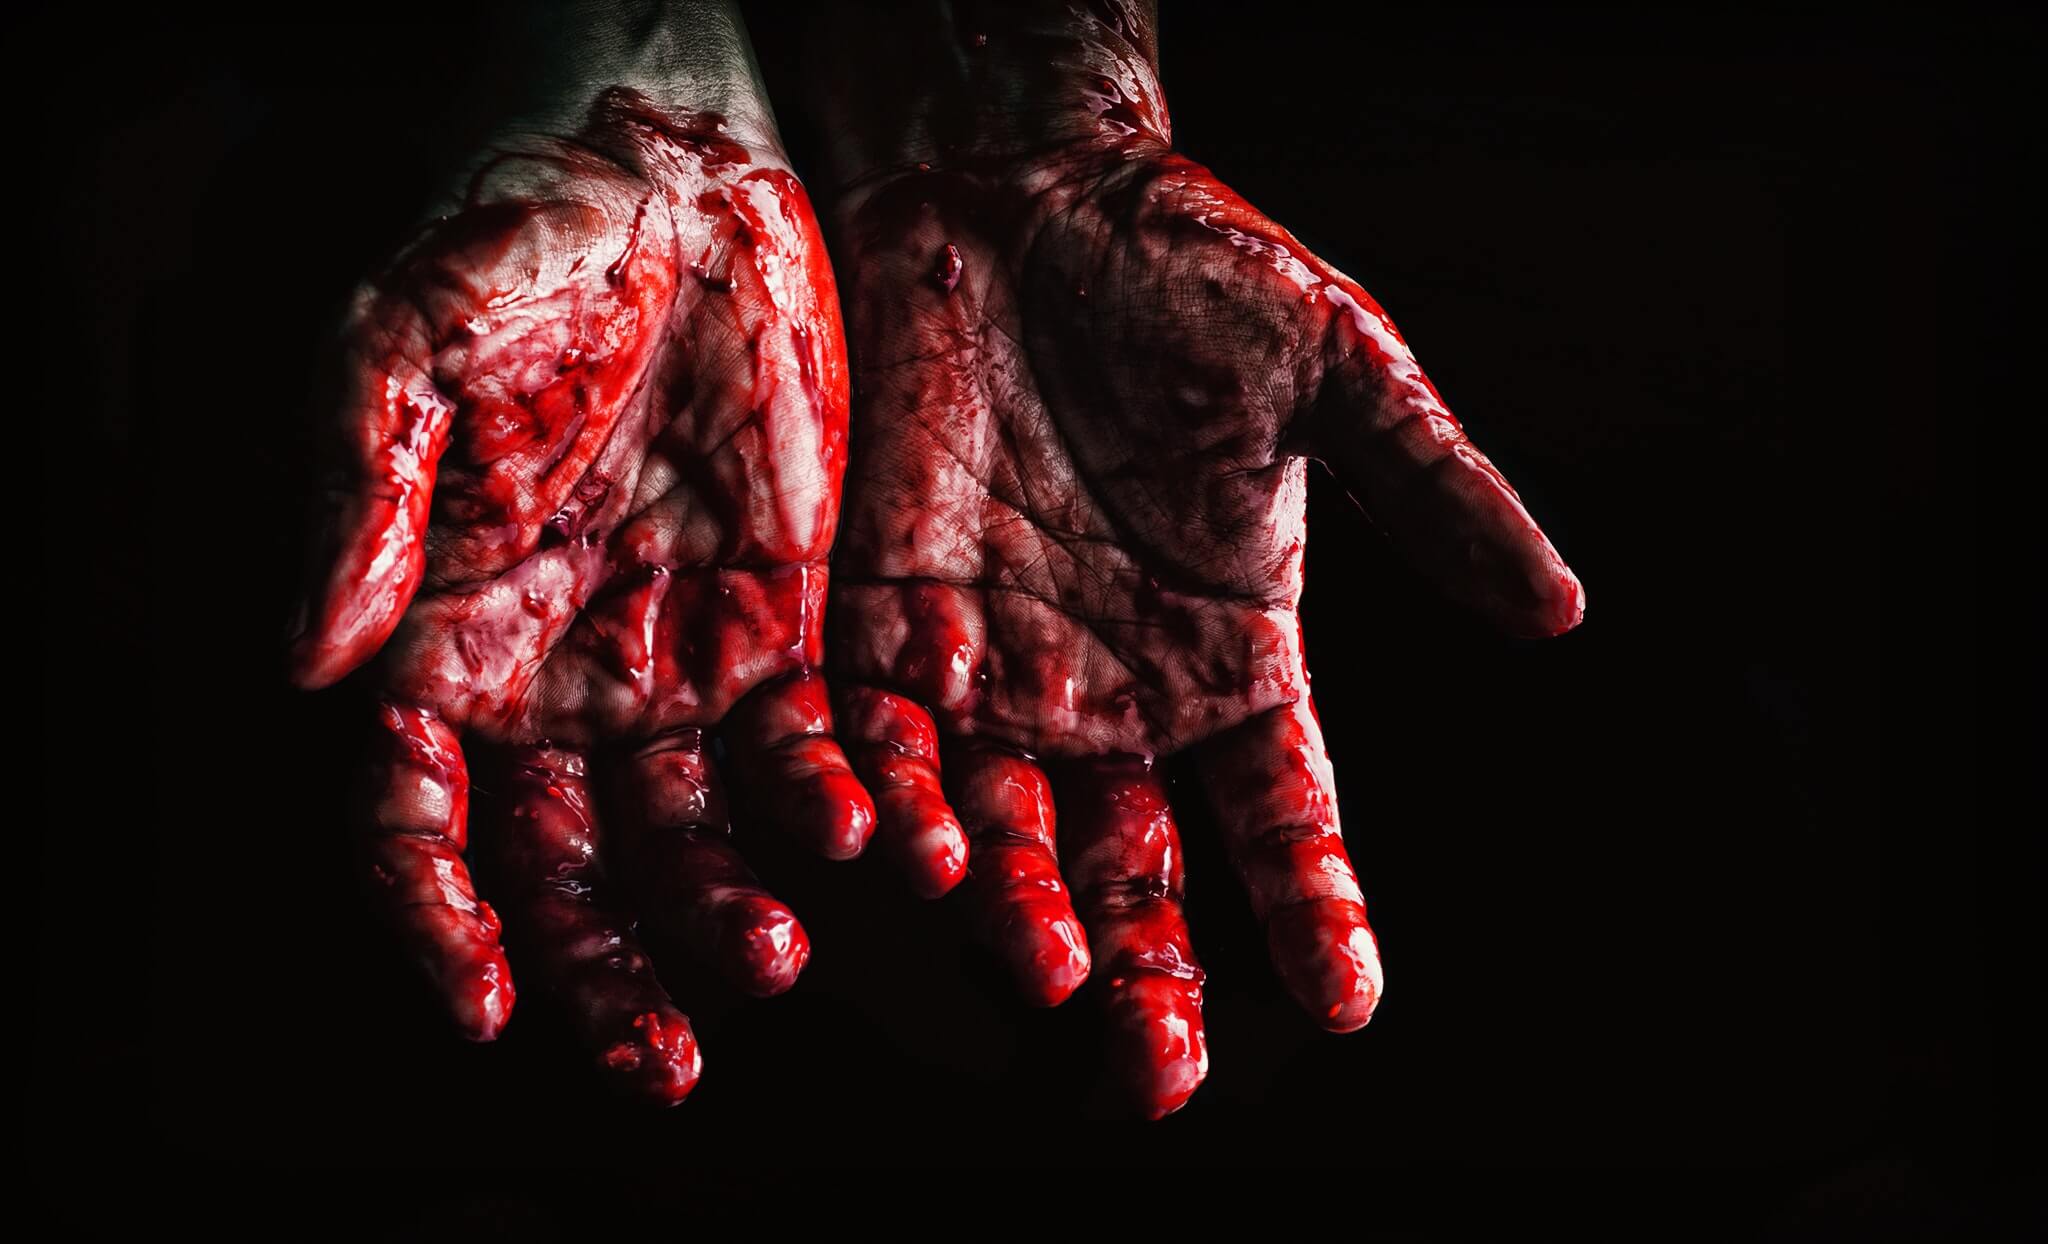 Twee handen die volledig onder het bloed zitten, mogelijk van een seriemoordenaar die net een moord heeft gepleegd